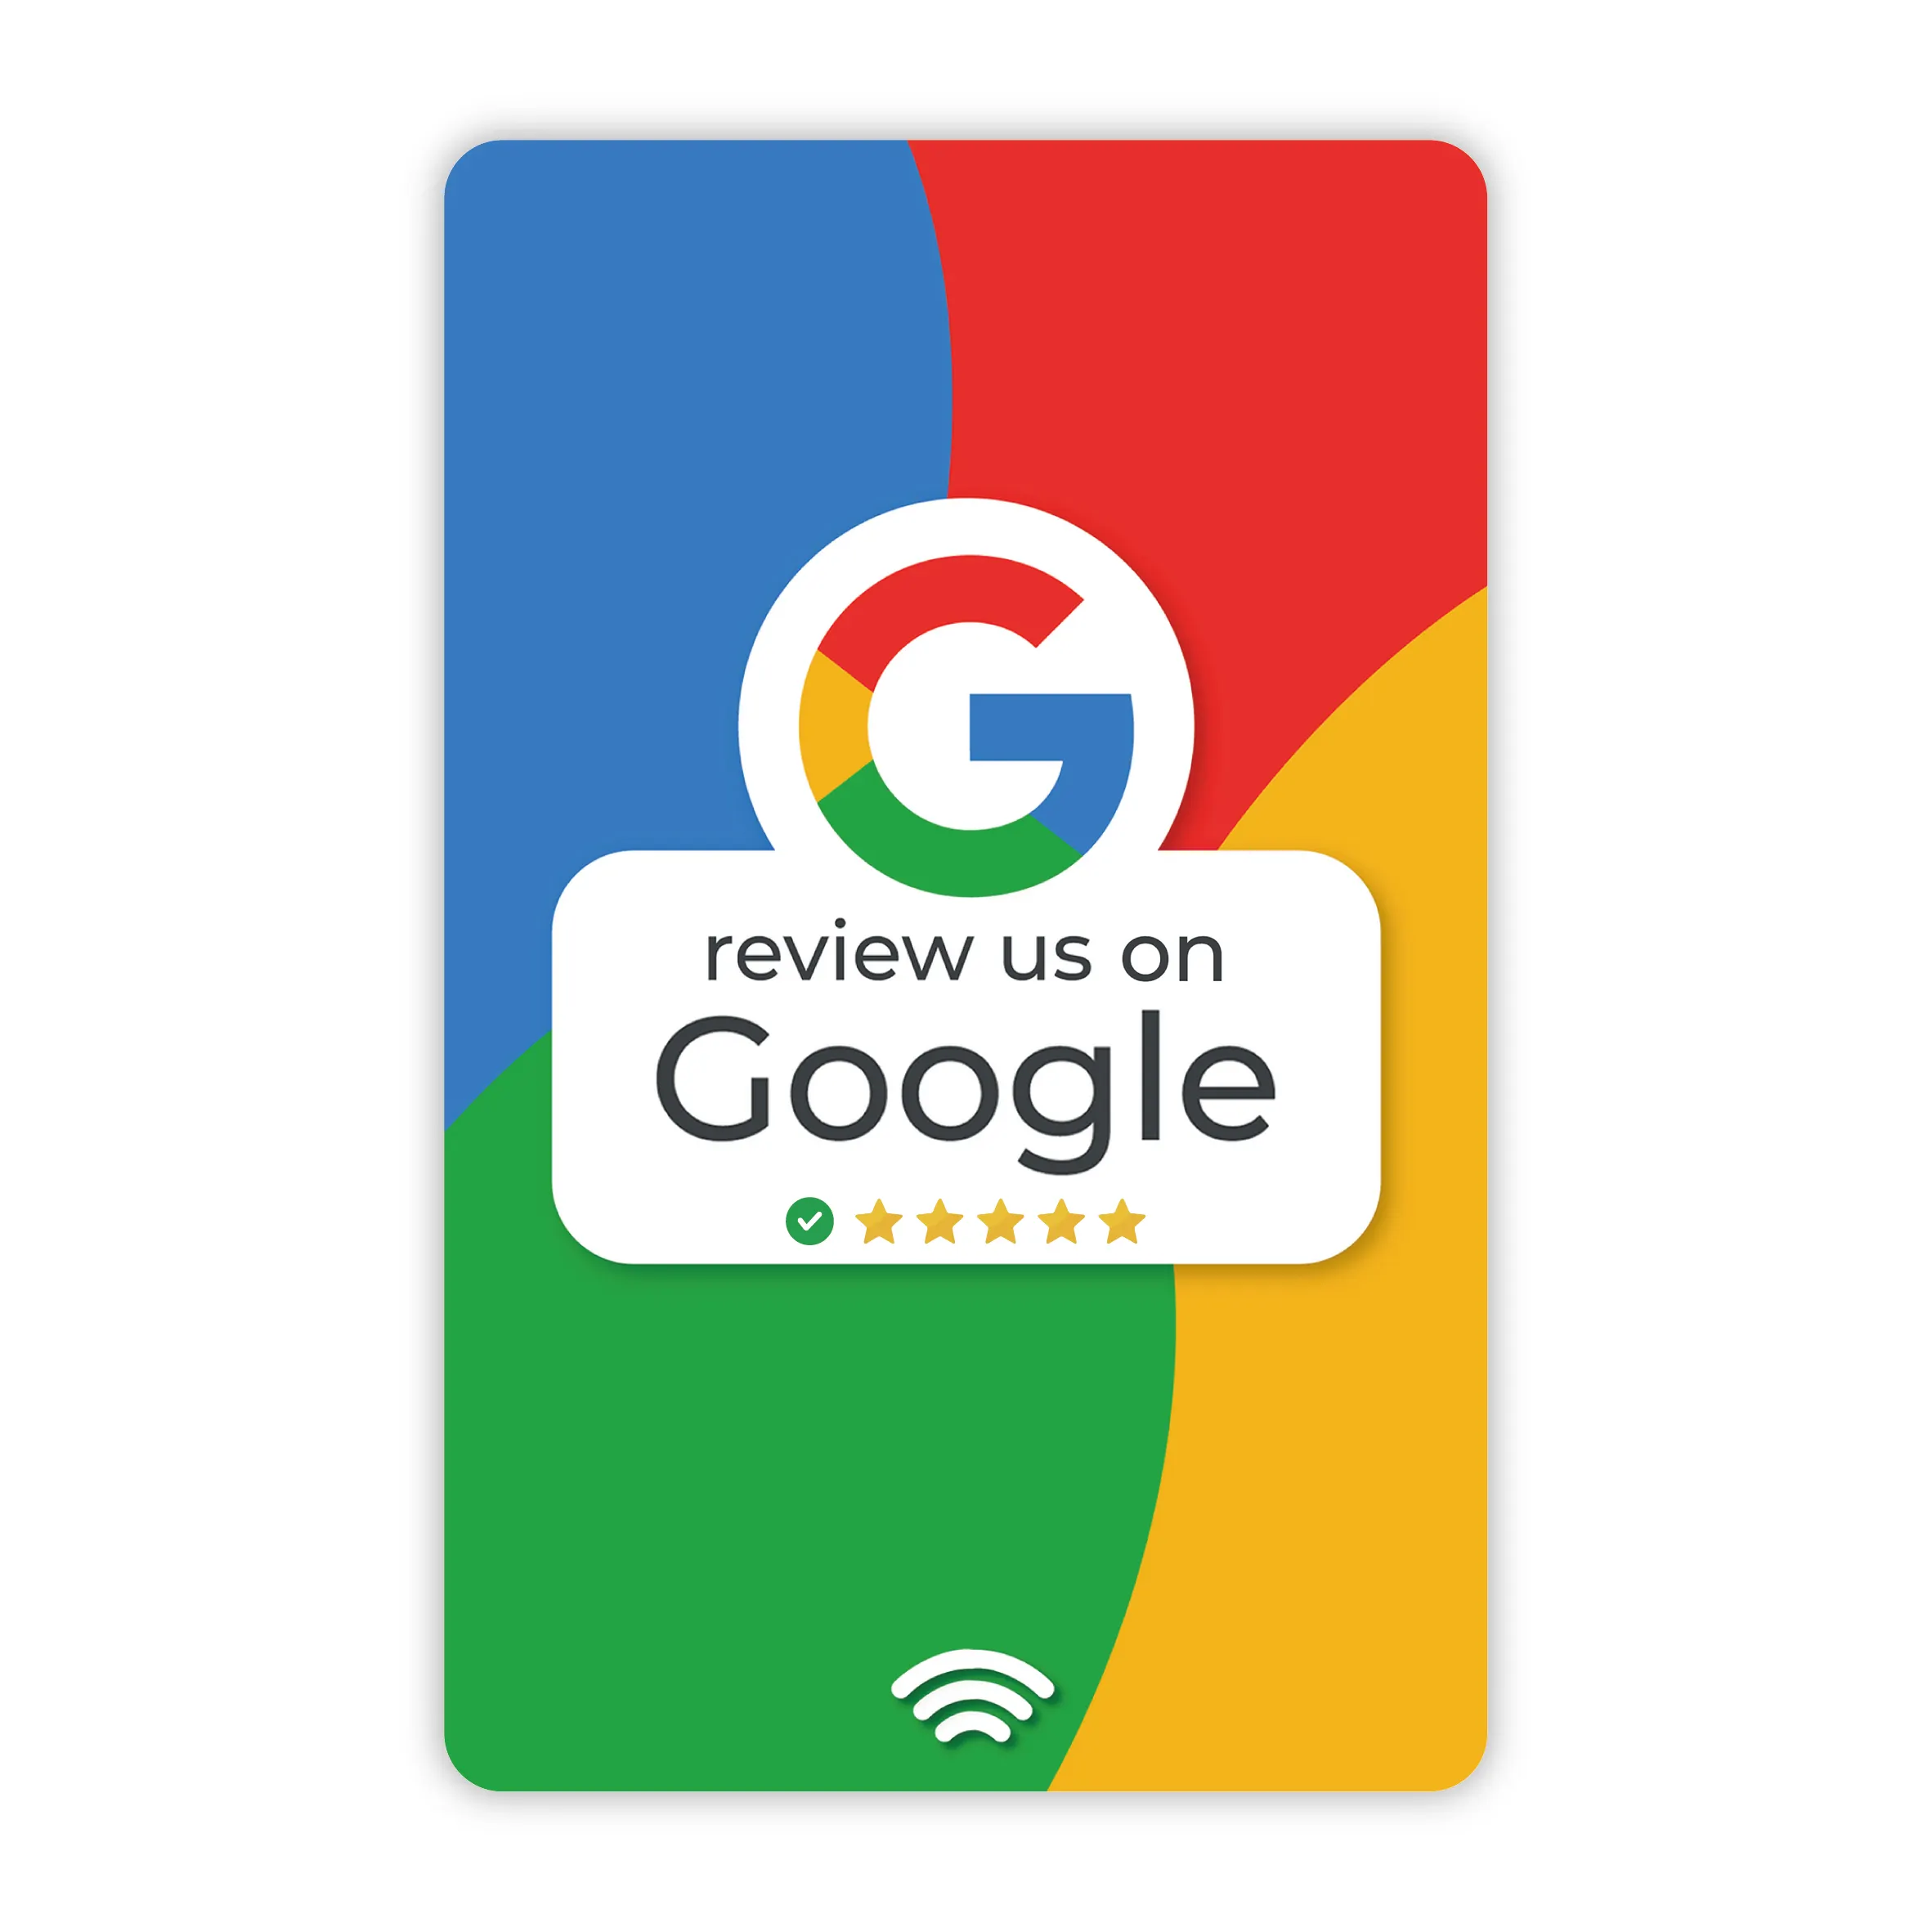 GoogleレビューカードチップソーシャルメディアプラスチックRFID NFC名刺